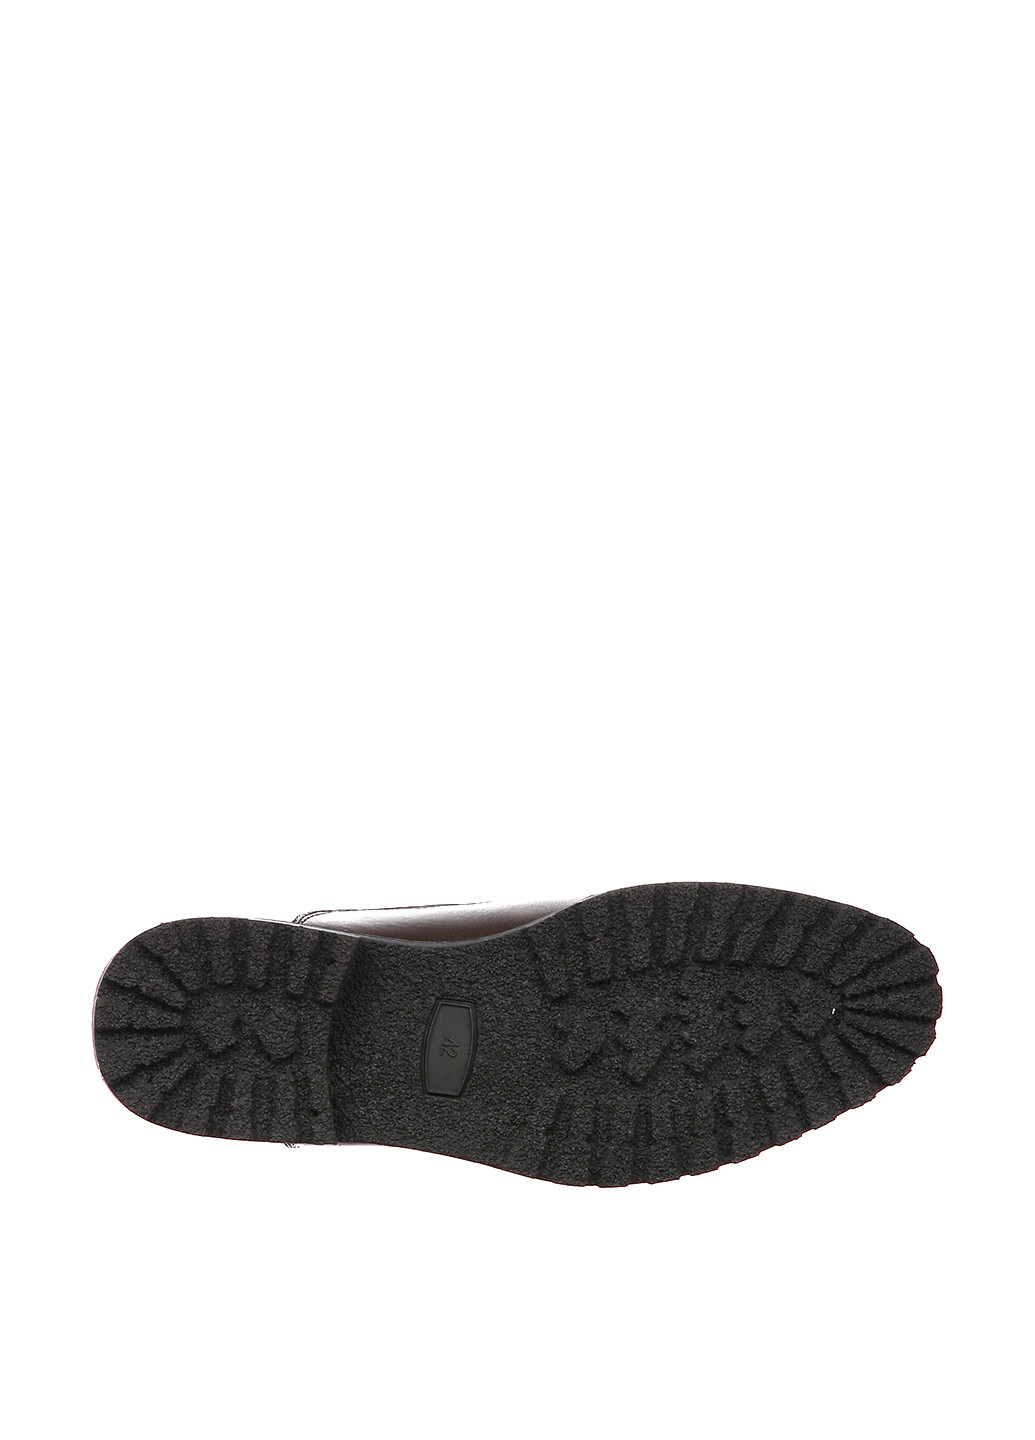 Темно-коричневые зимние ботинки NEW STAR YALASOU